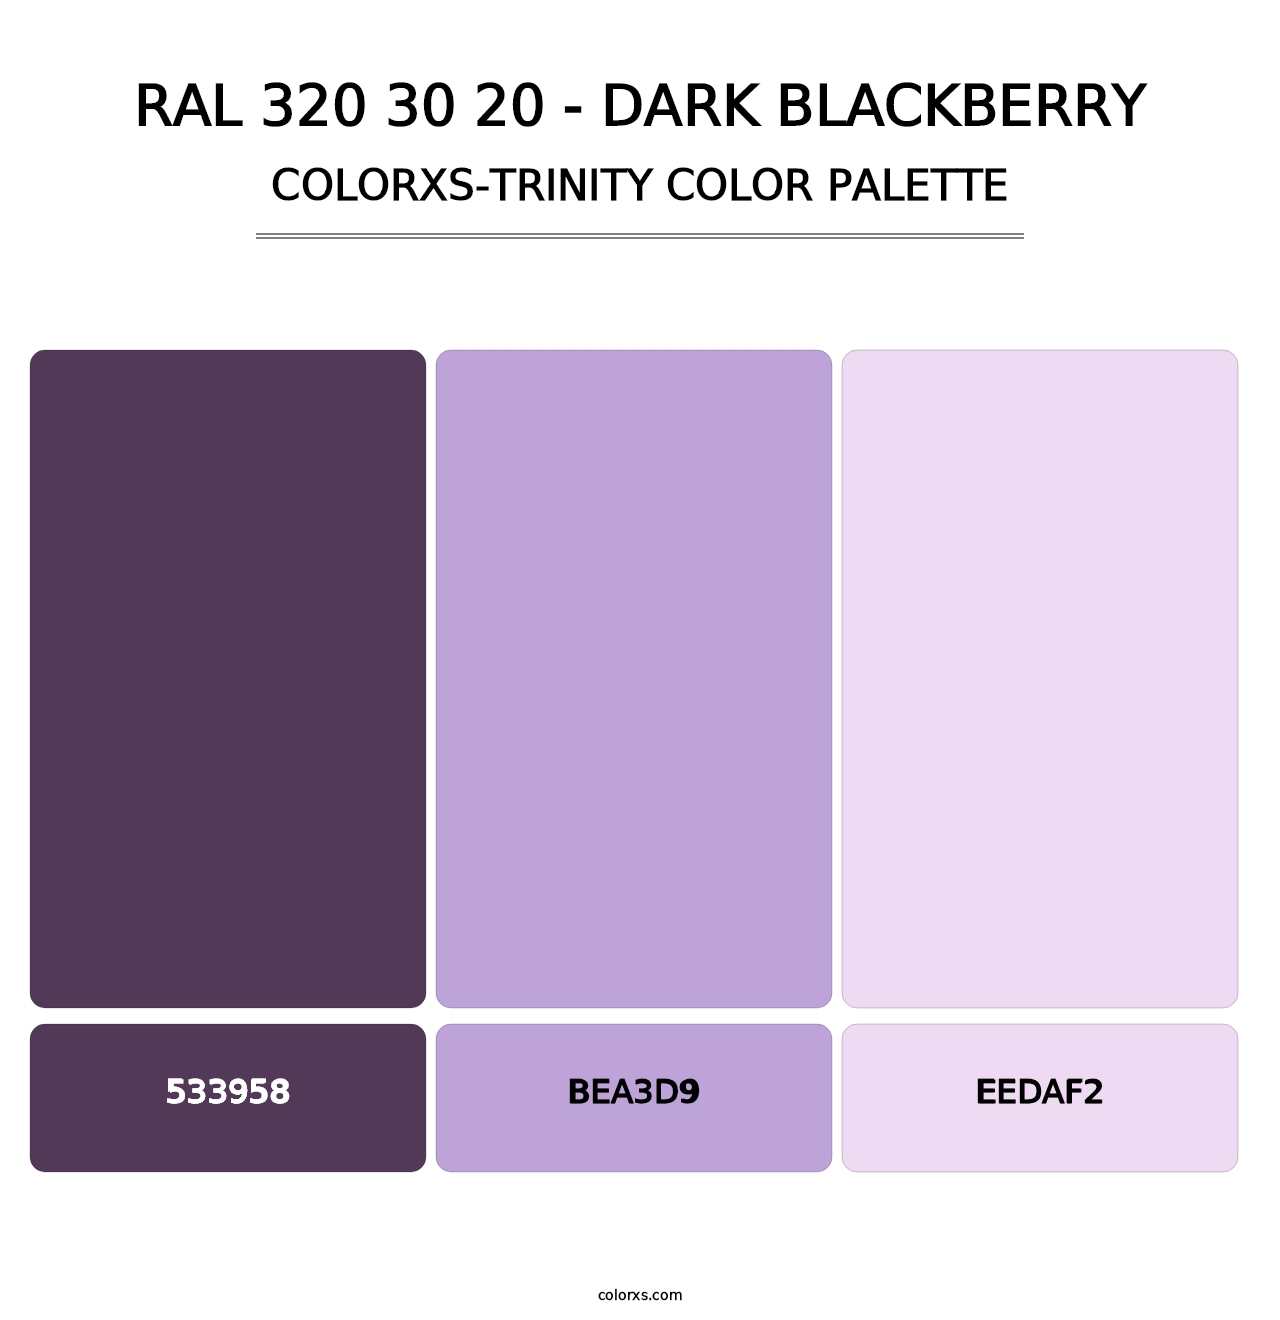 RAL 320 30 20 - Dark Blackberry - Colorxs Trinity Palette